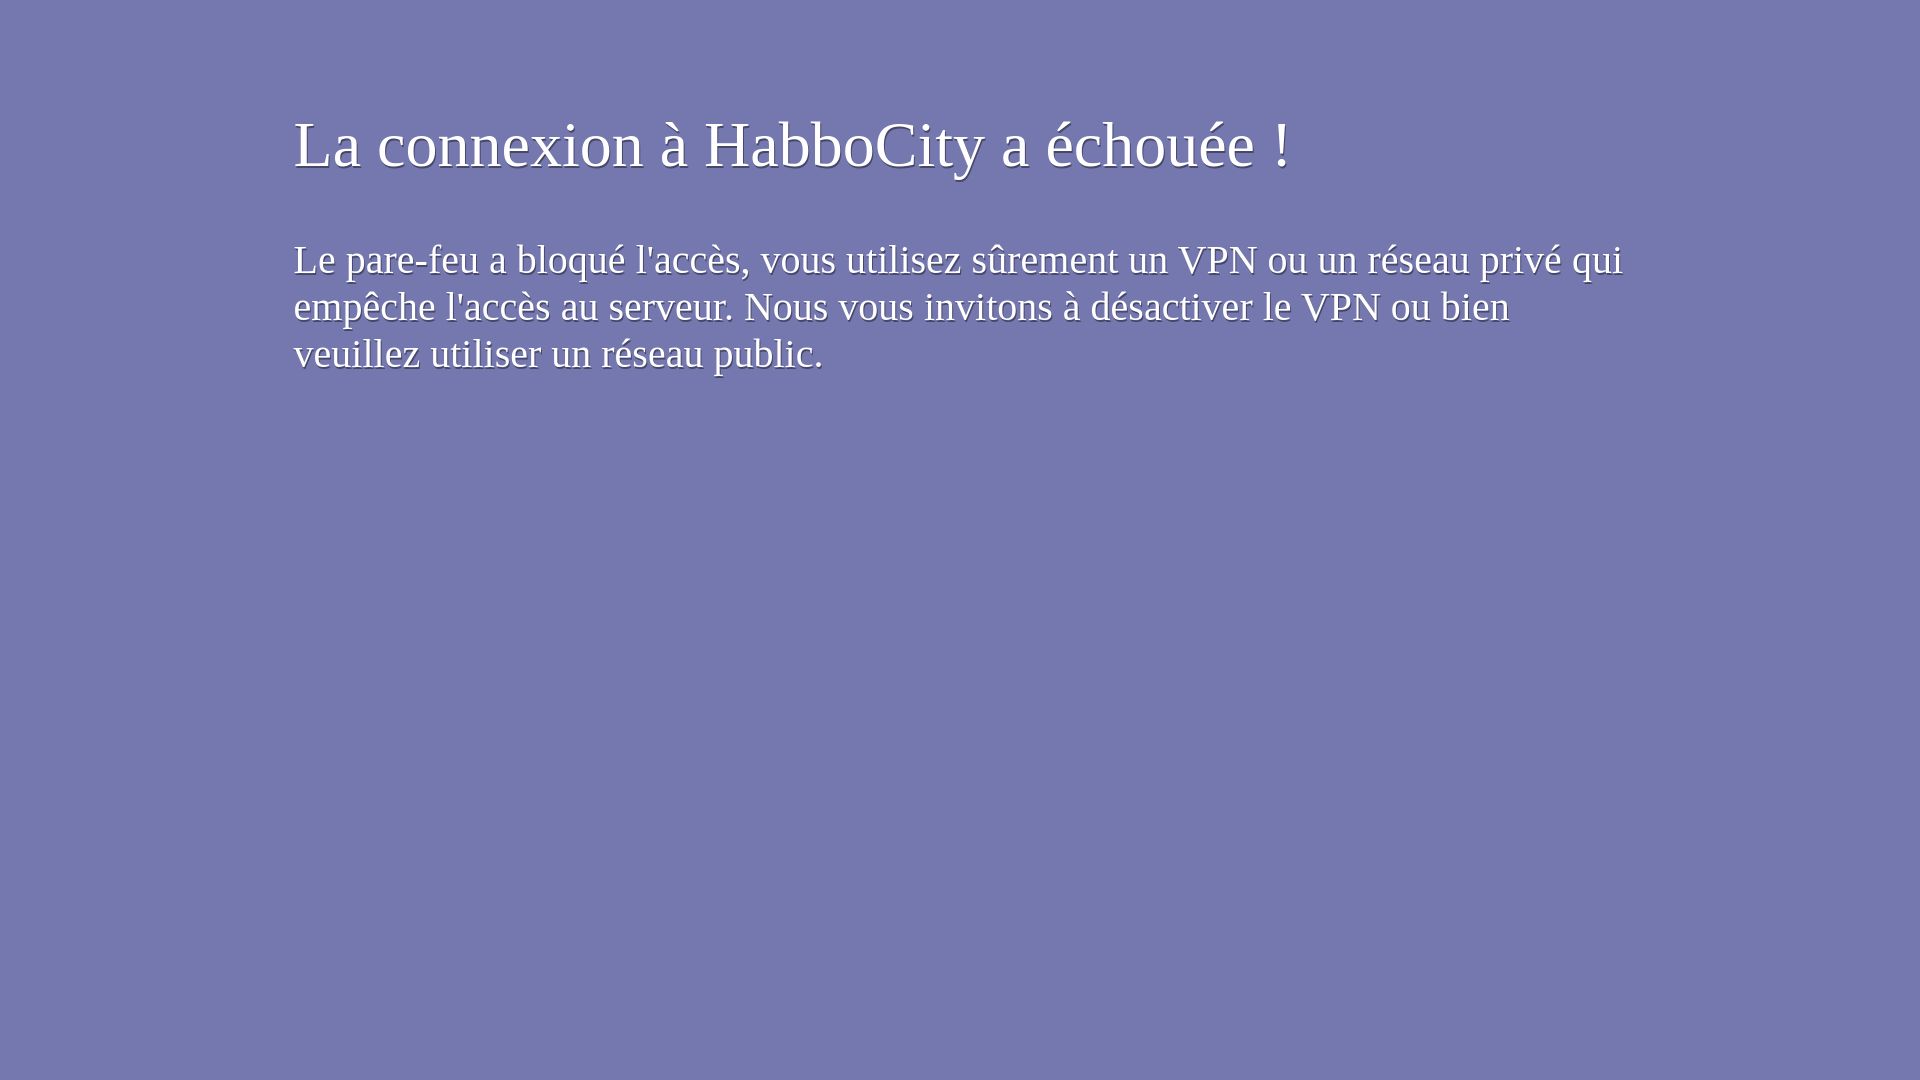 вебсайт habbocity.me Є   ONLINE